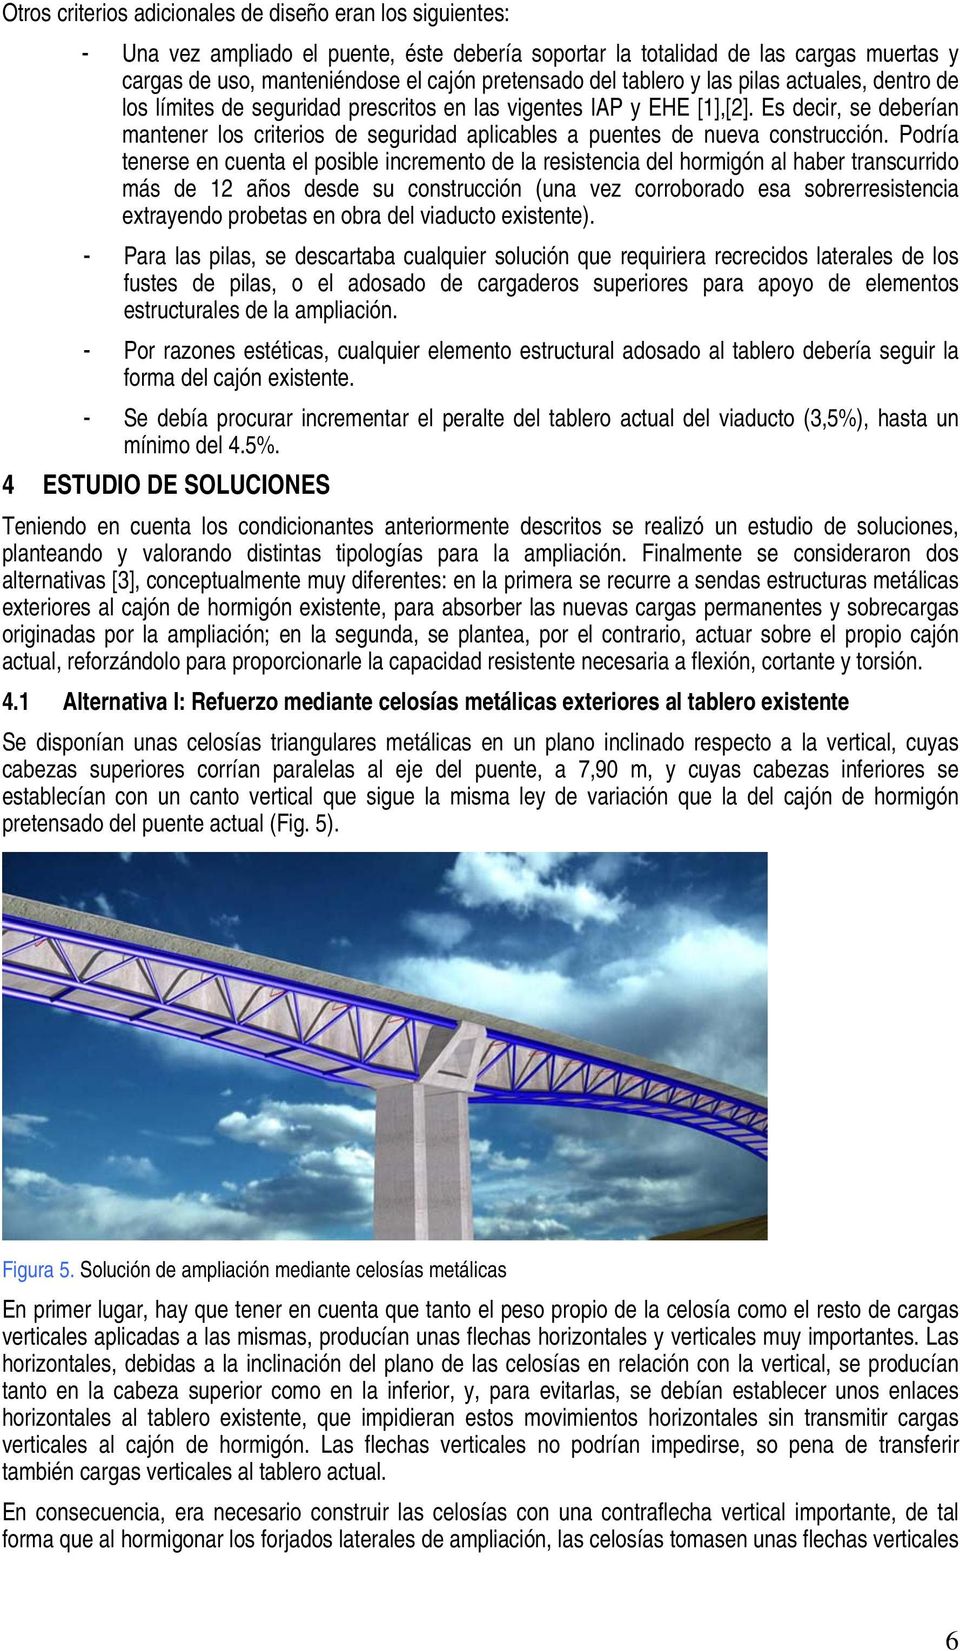 Es decir, se deberían mantener los criterios de seguridad aplicables a puentes de nueva construcción.